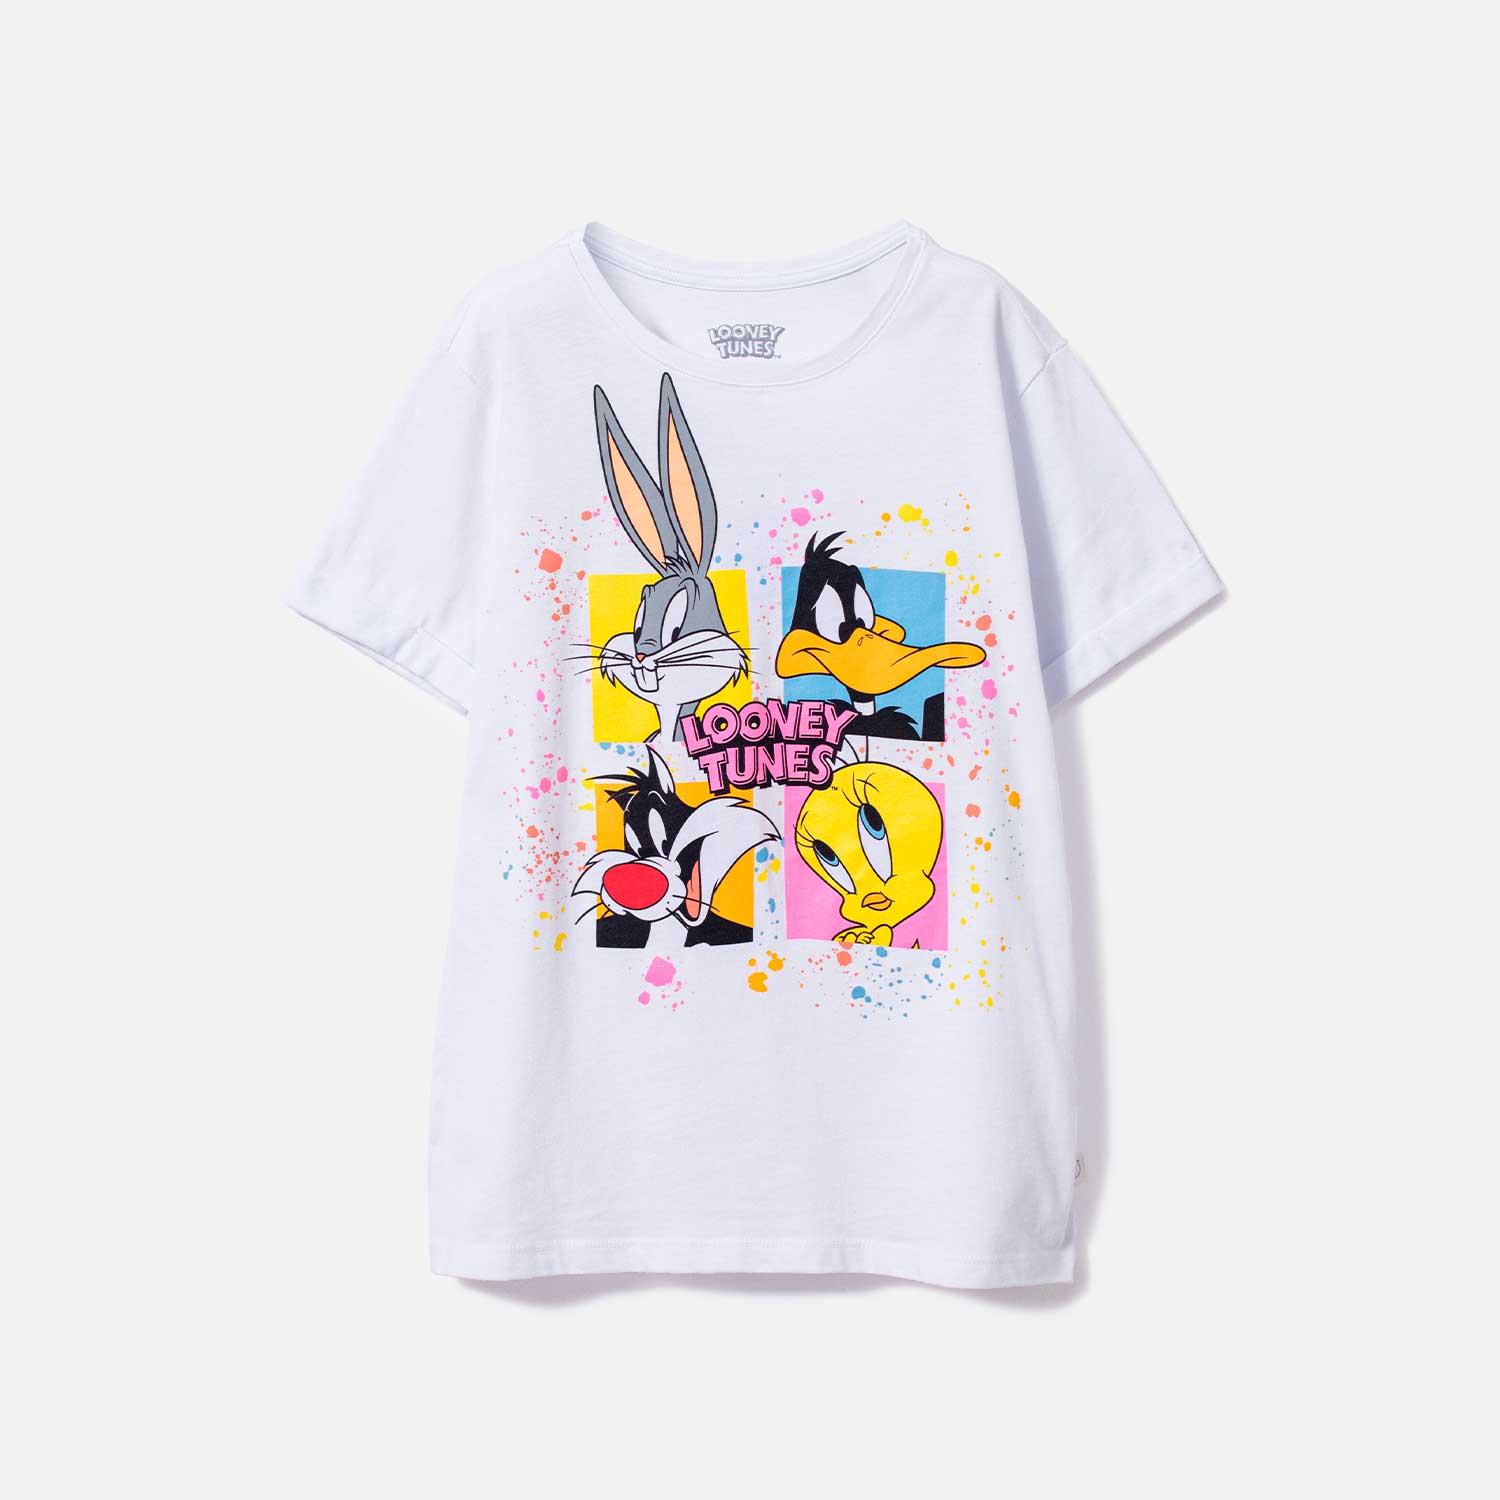 Camiseta de Looney Tunes estampada niña - Tienda Online MIC